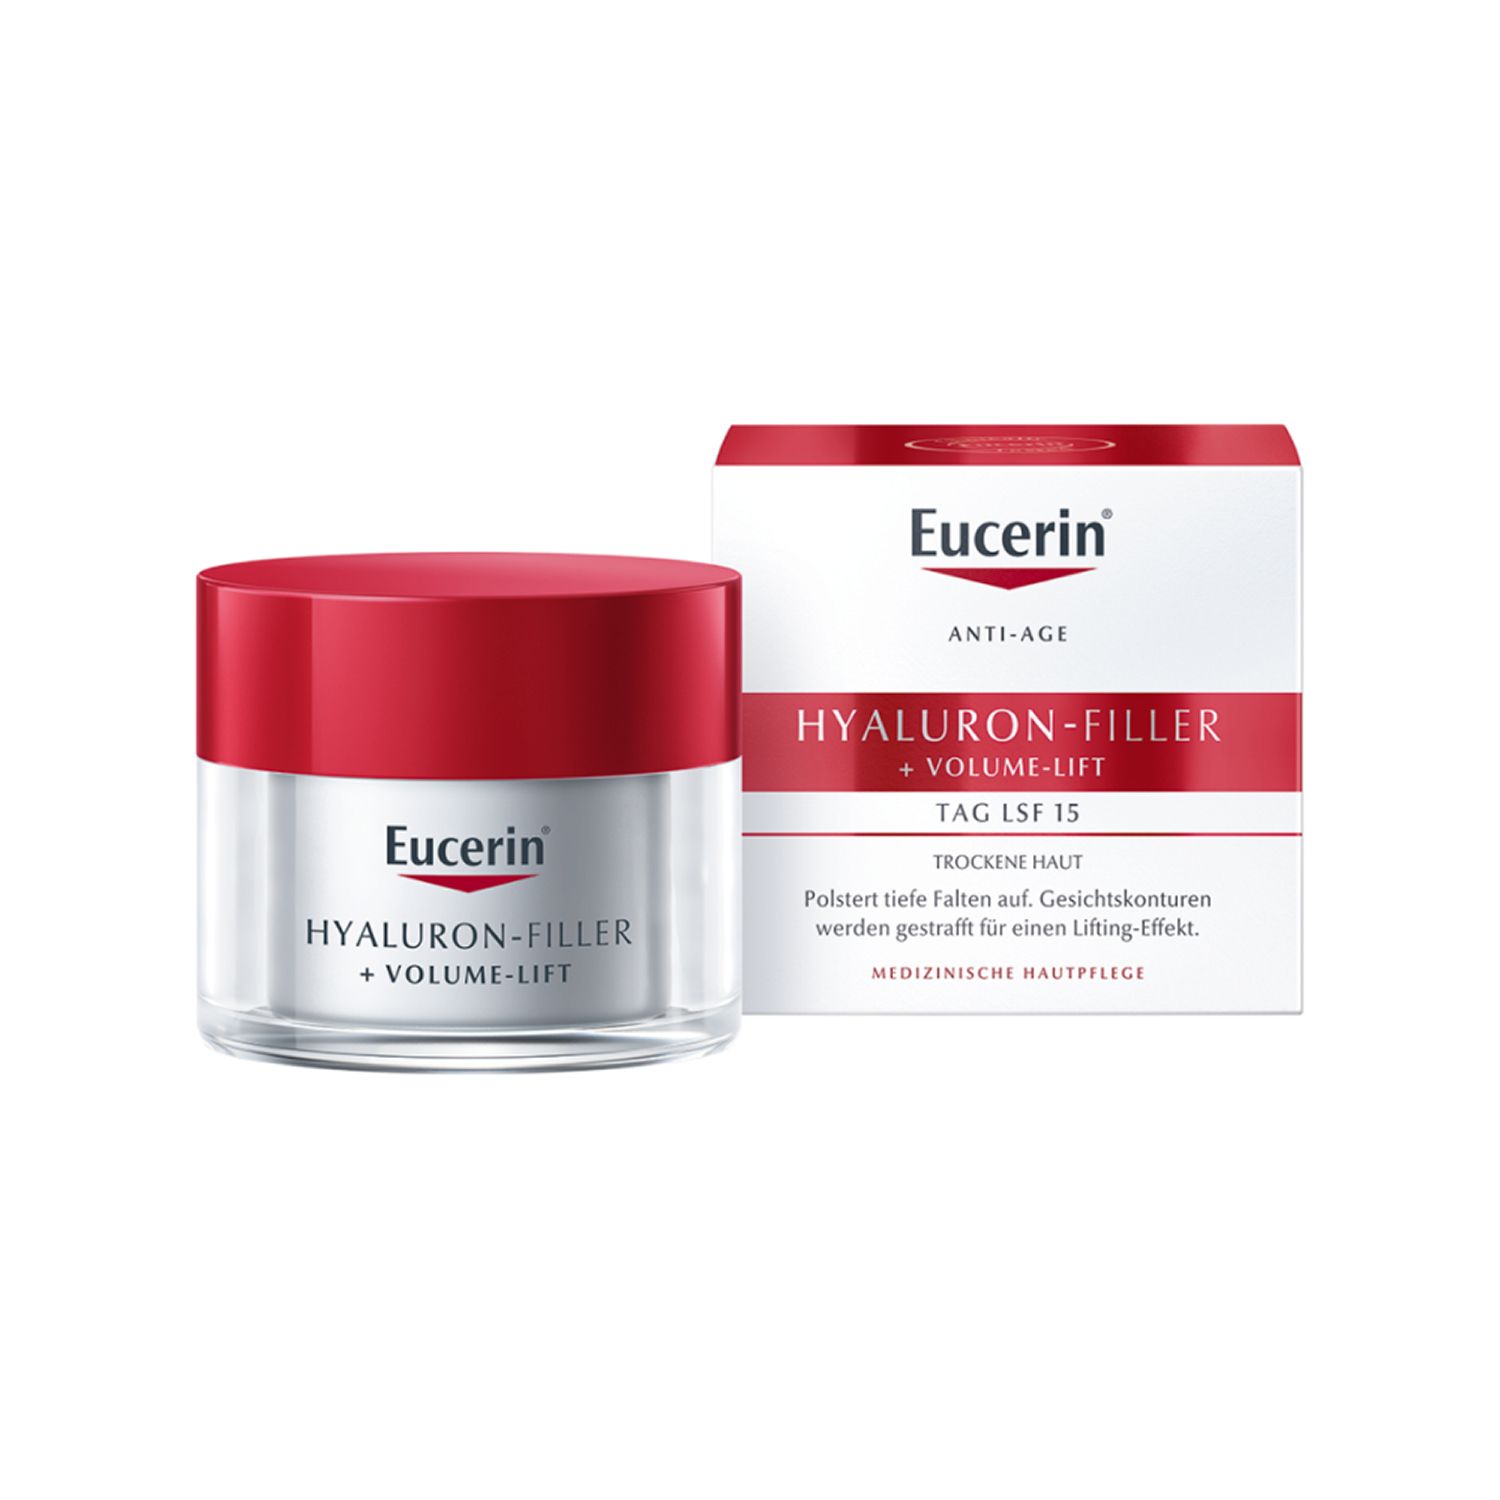 Eucerin® HYALURON-FILLER + Volume-Lift Tagespflege für trockene Haut + Eucerin Hyaluron-Filler Intensiv-Maske GRATIS